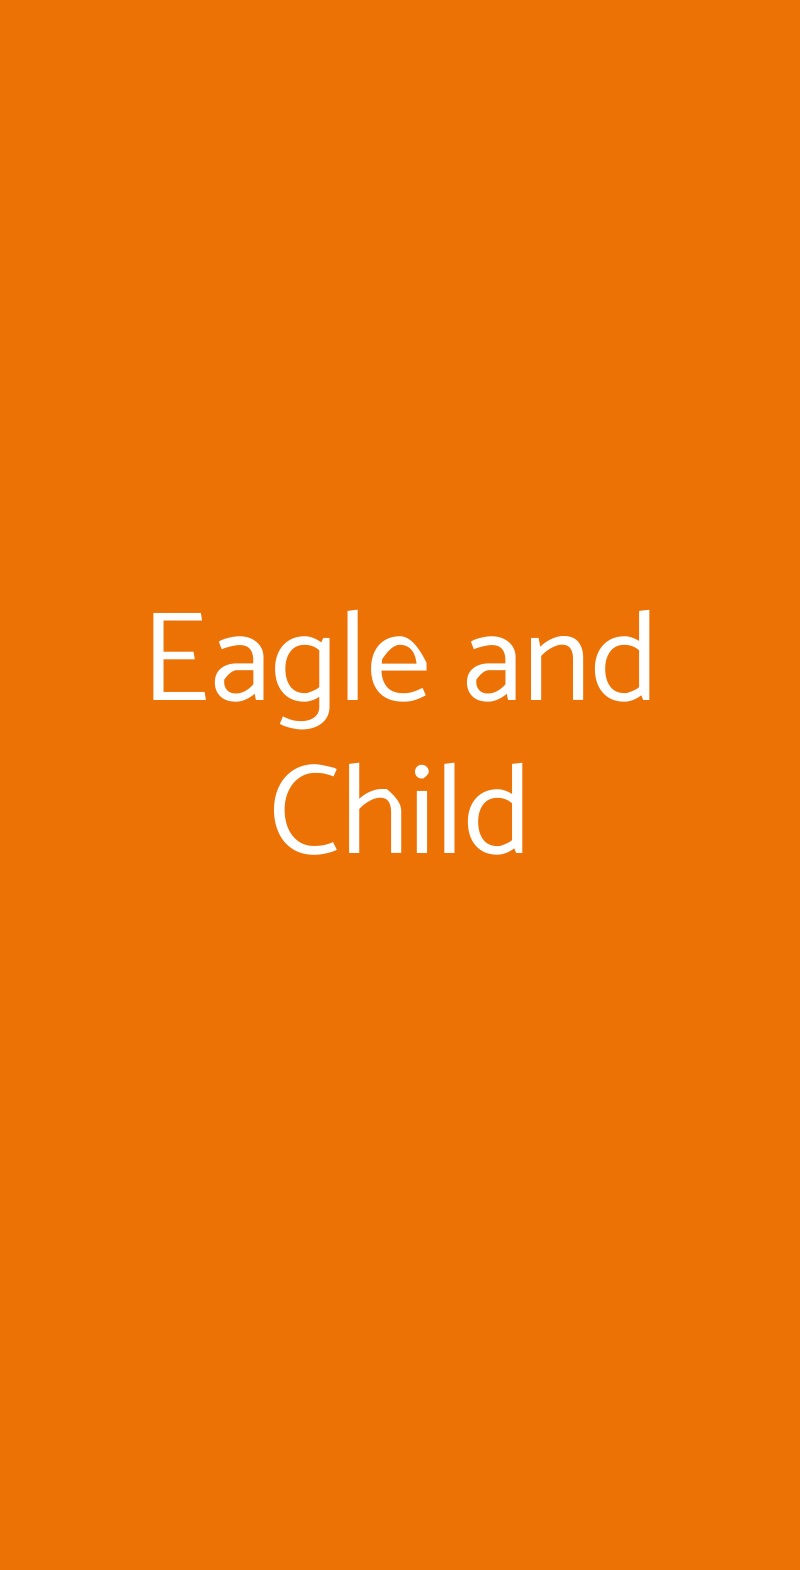 Eagle and Child Caserta menù 1 pagina